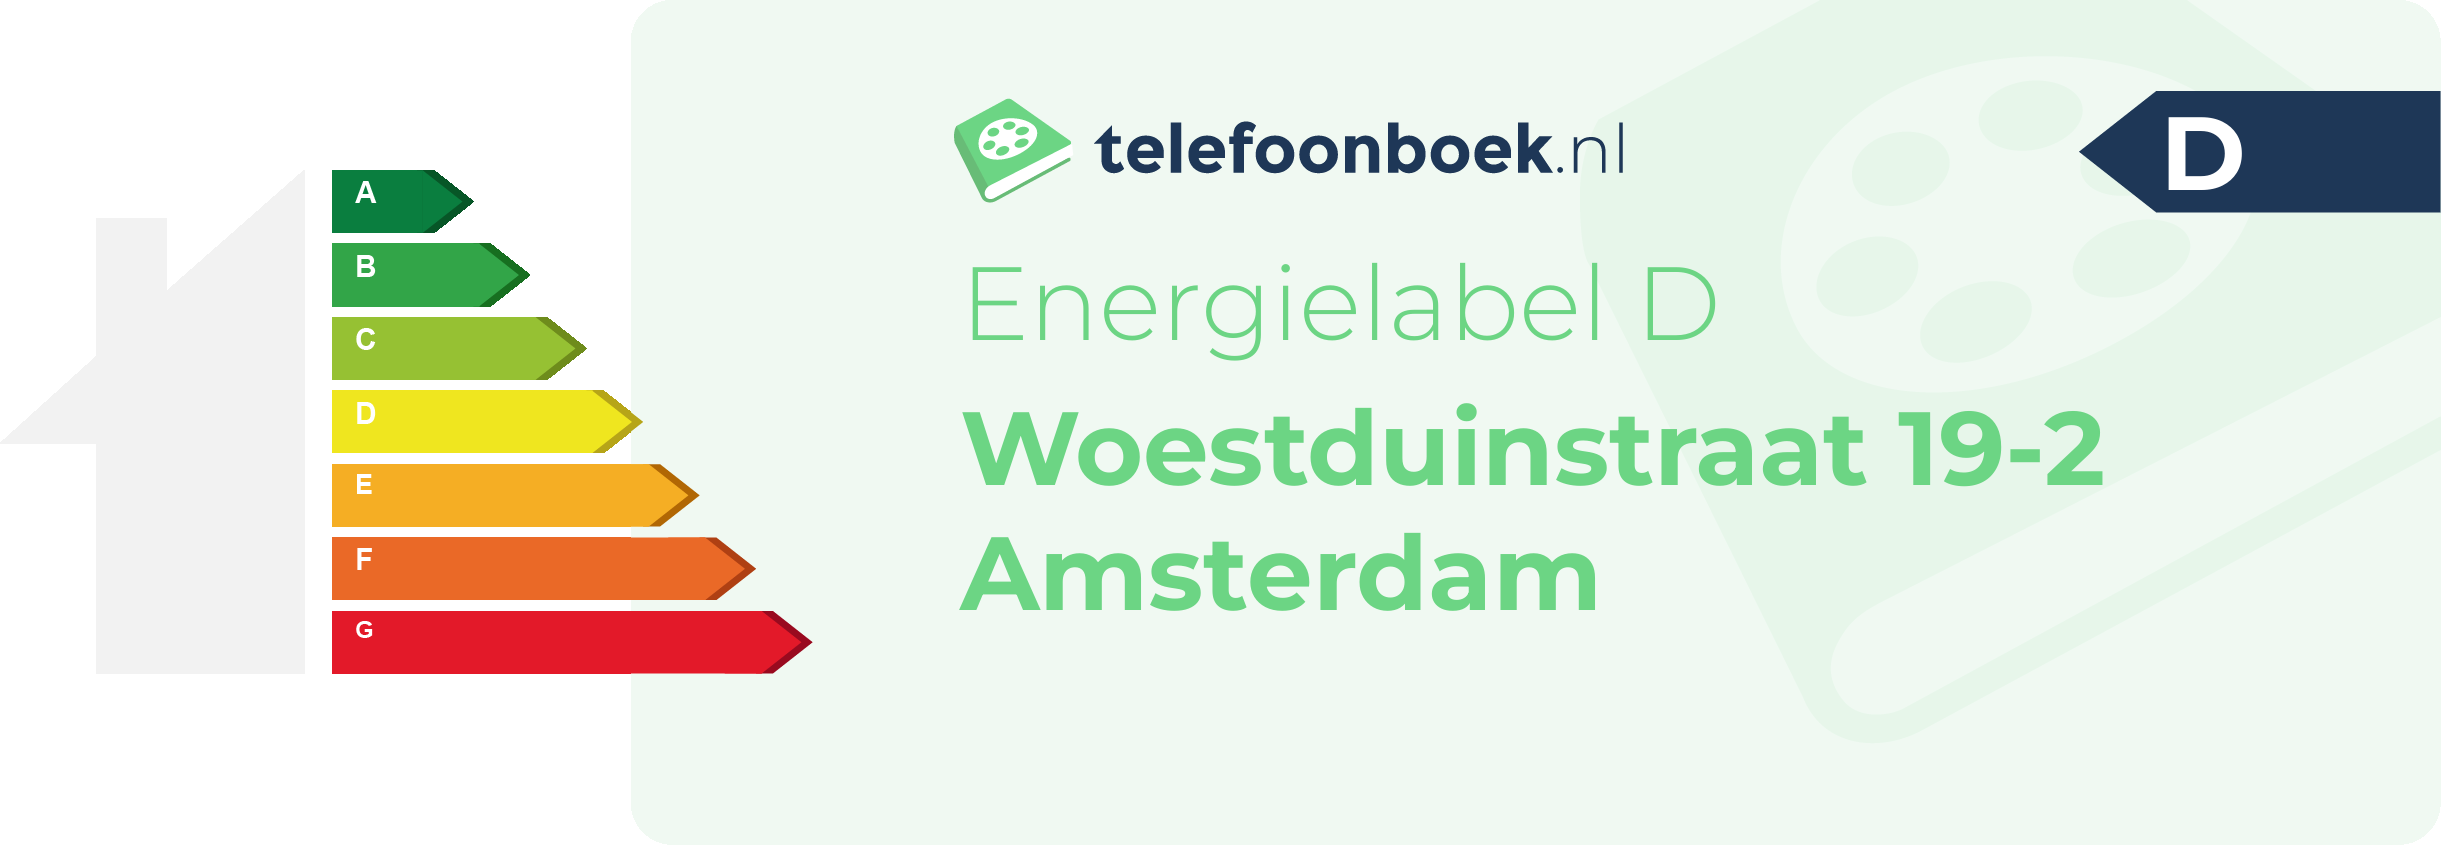 Energielabel Woestduinstraat 19-2 Amsterdam